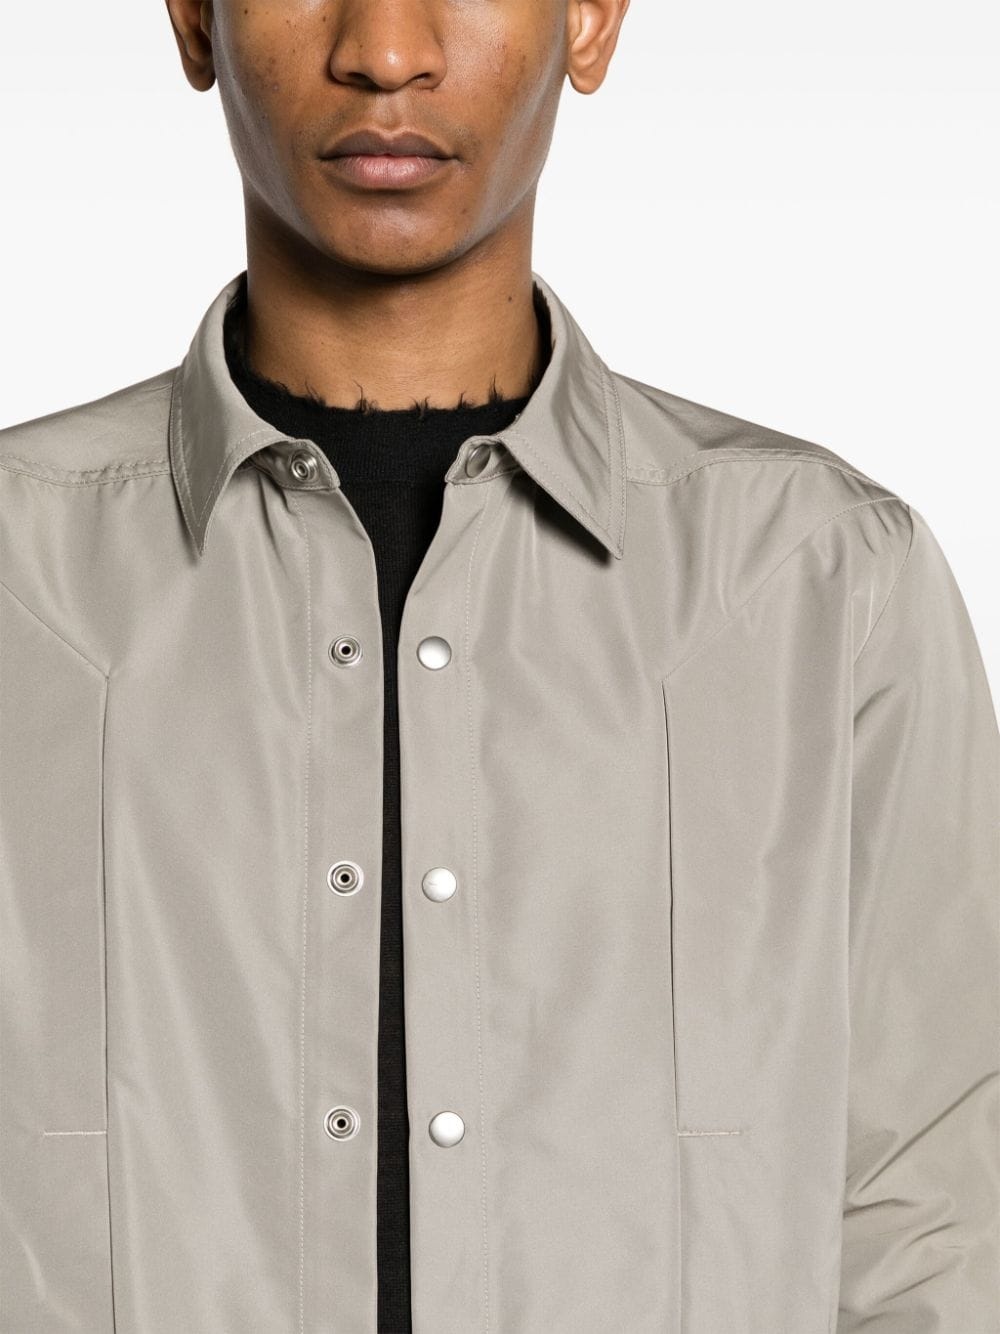 Fogpocket shirt jacket - 5